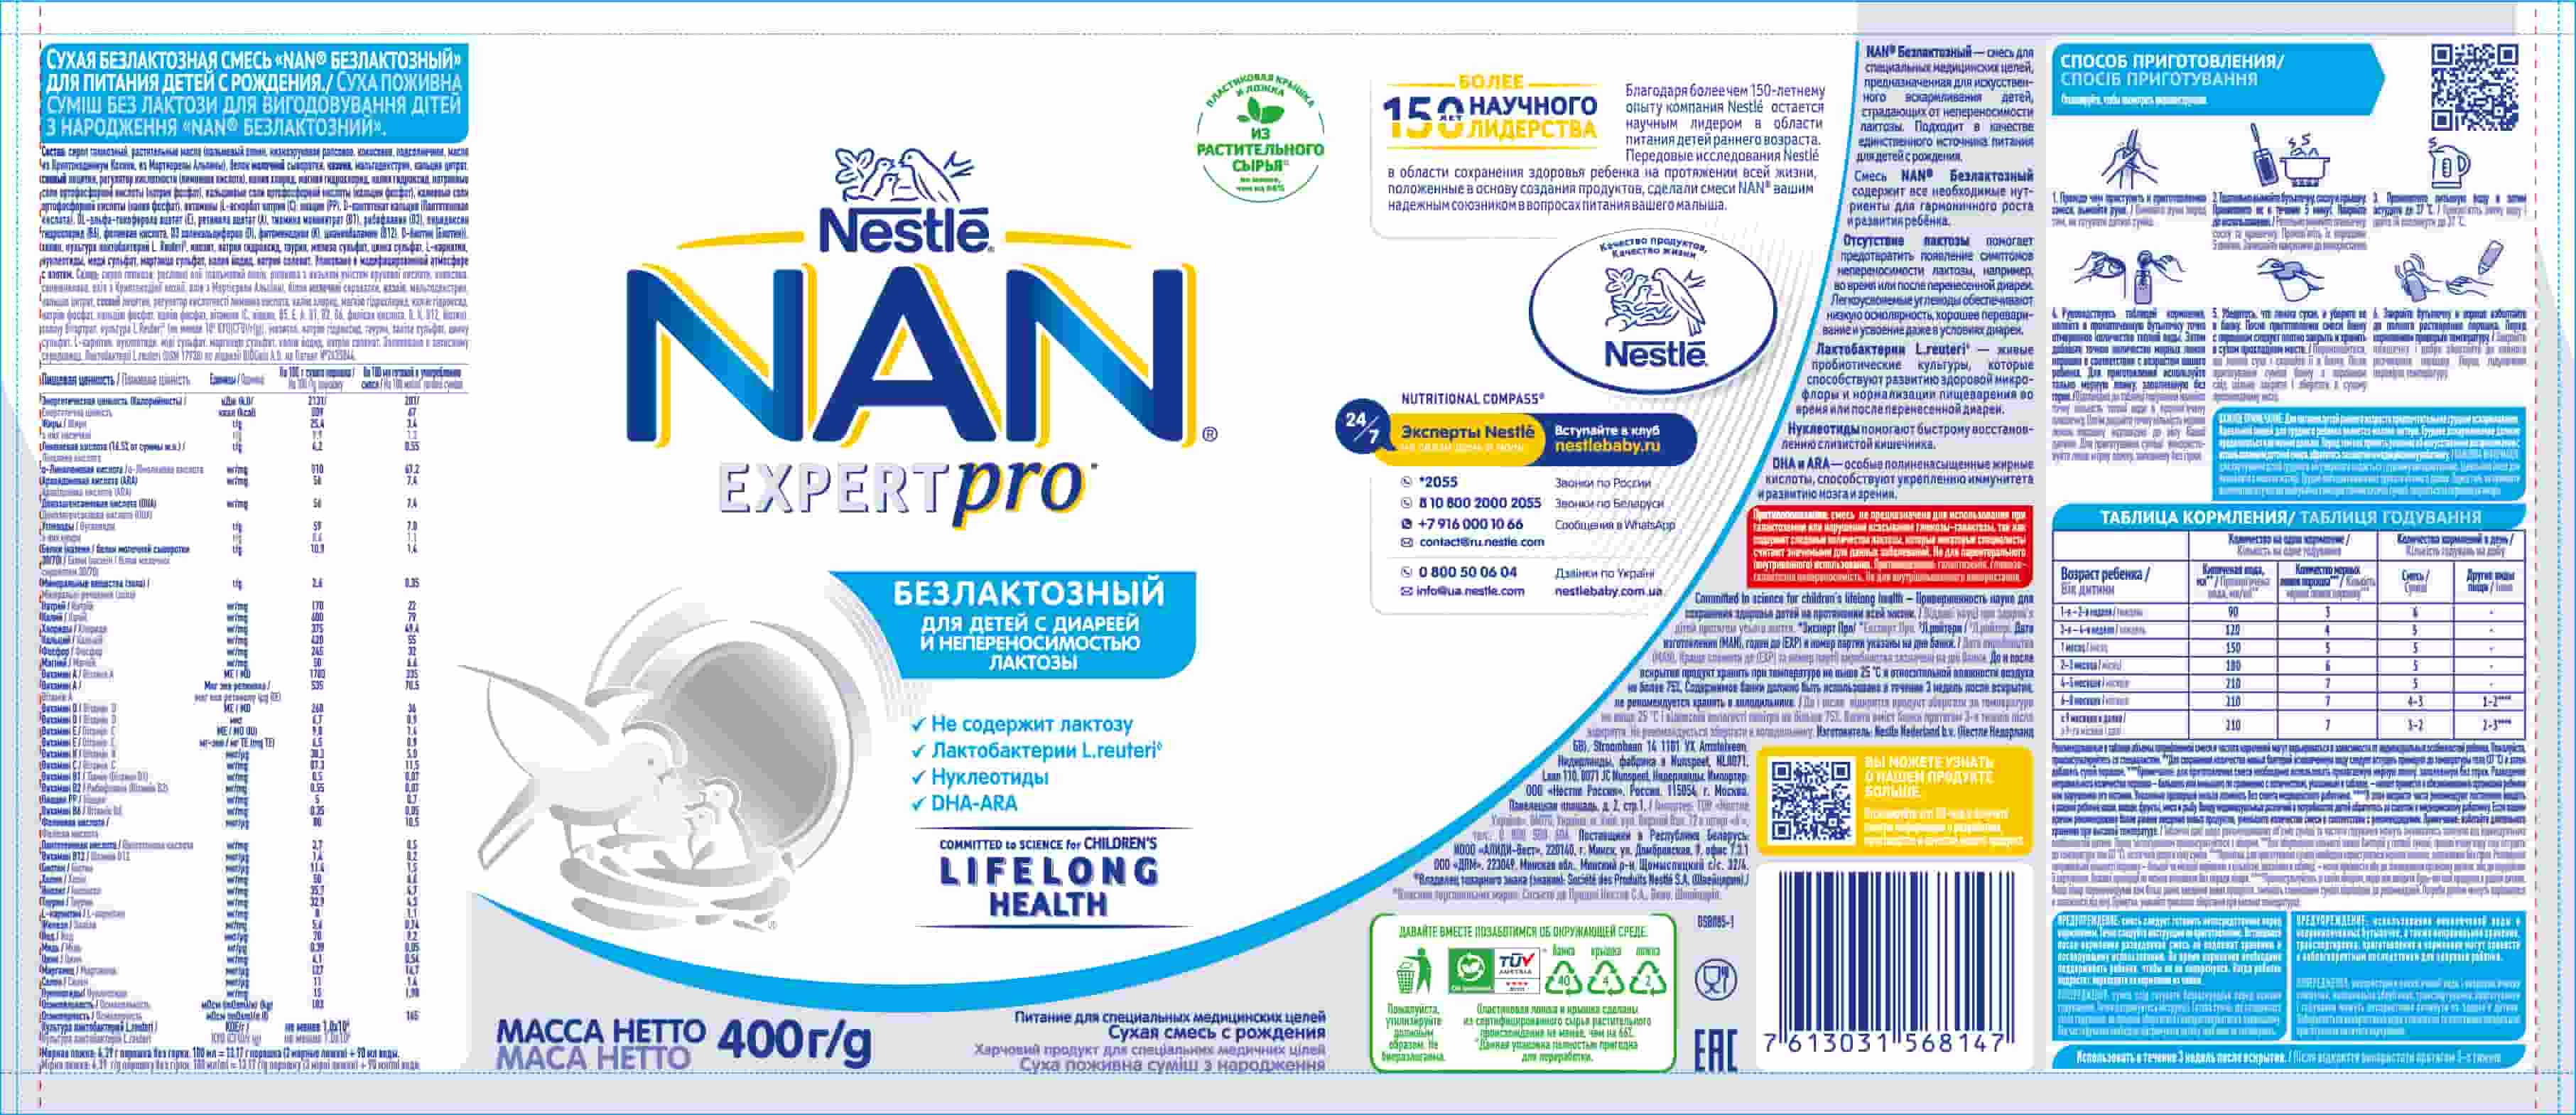 Сухая питательная смесь без лактозы для вскармливания детей с рождения "NAN® Безлактозный"